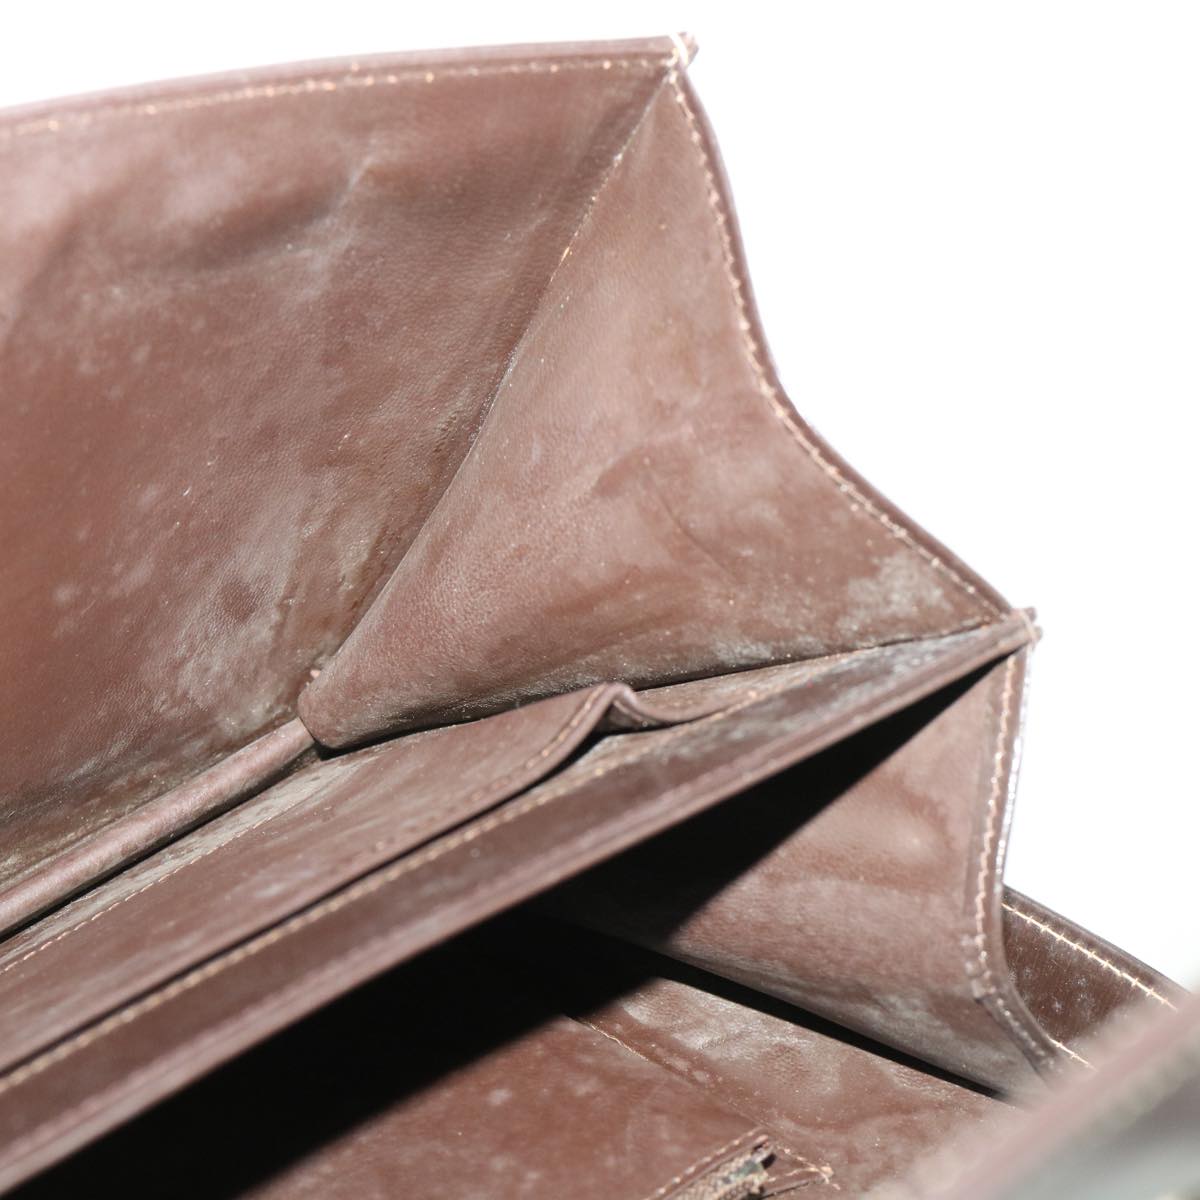 CELINE C Macadam Canvas Shoulder Bag Canvas Leather Beige Dark Brown Auth bs6694